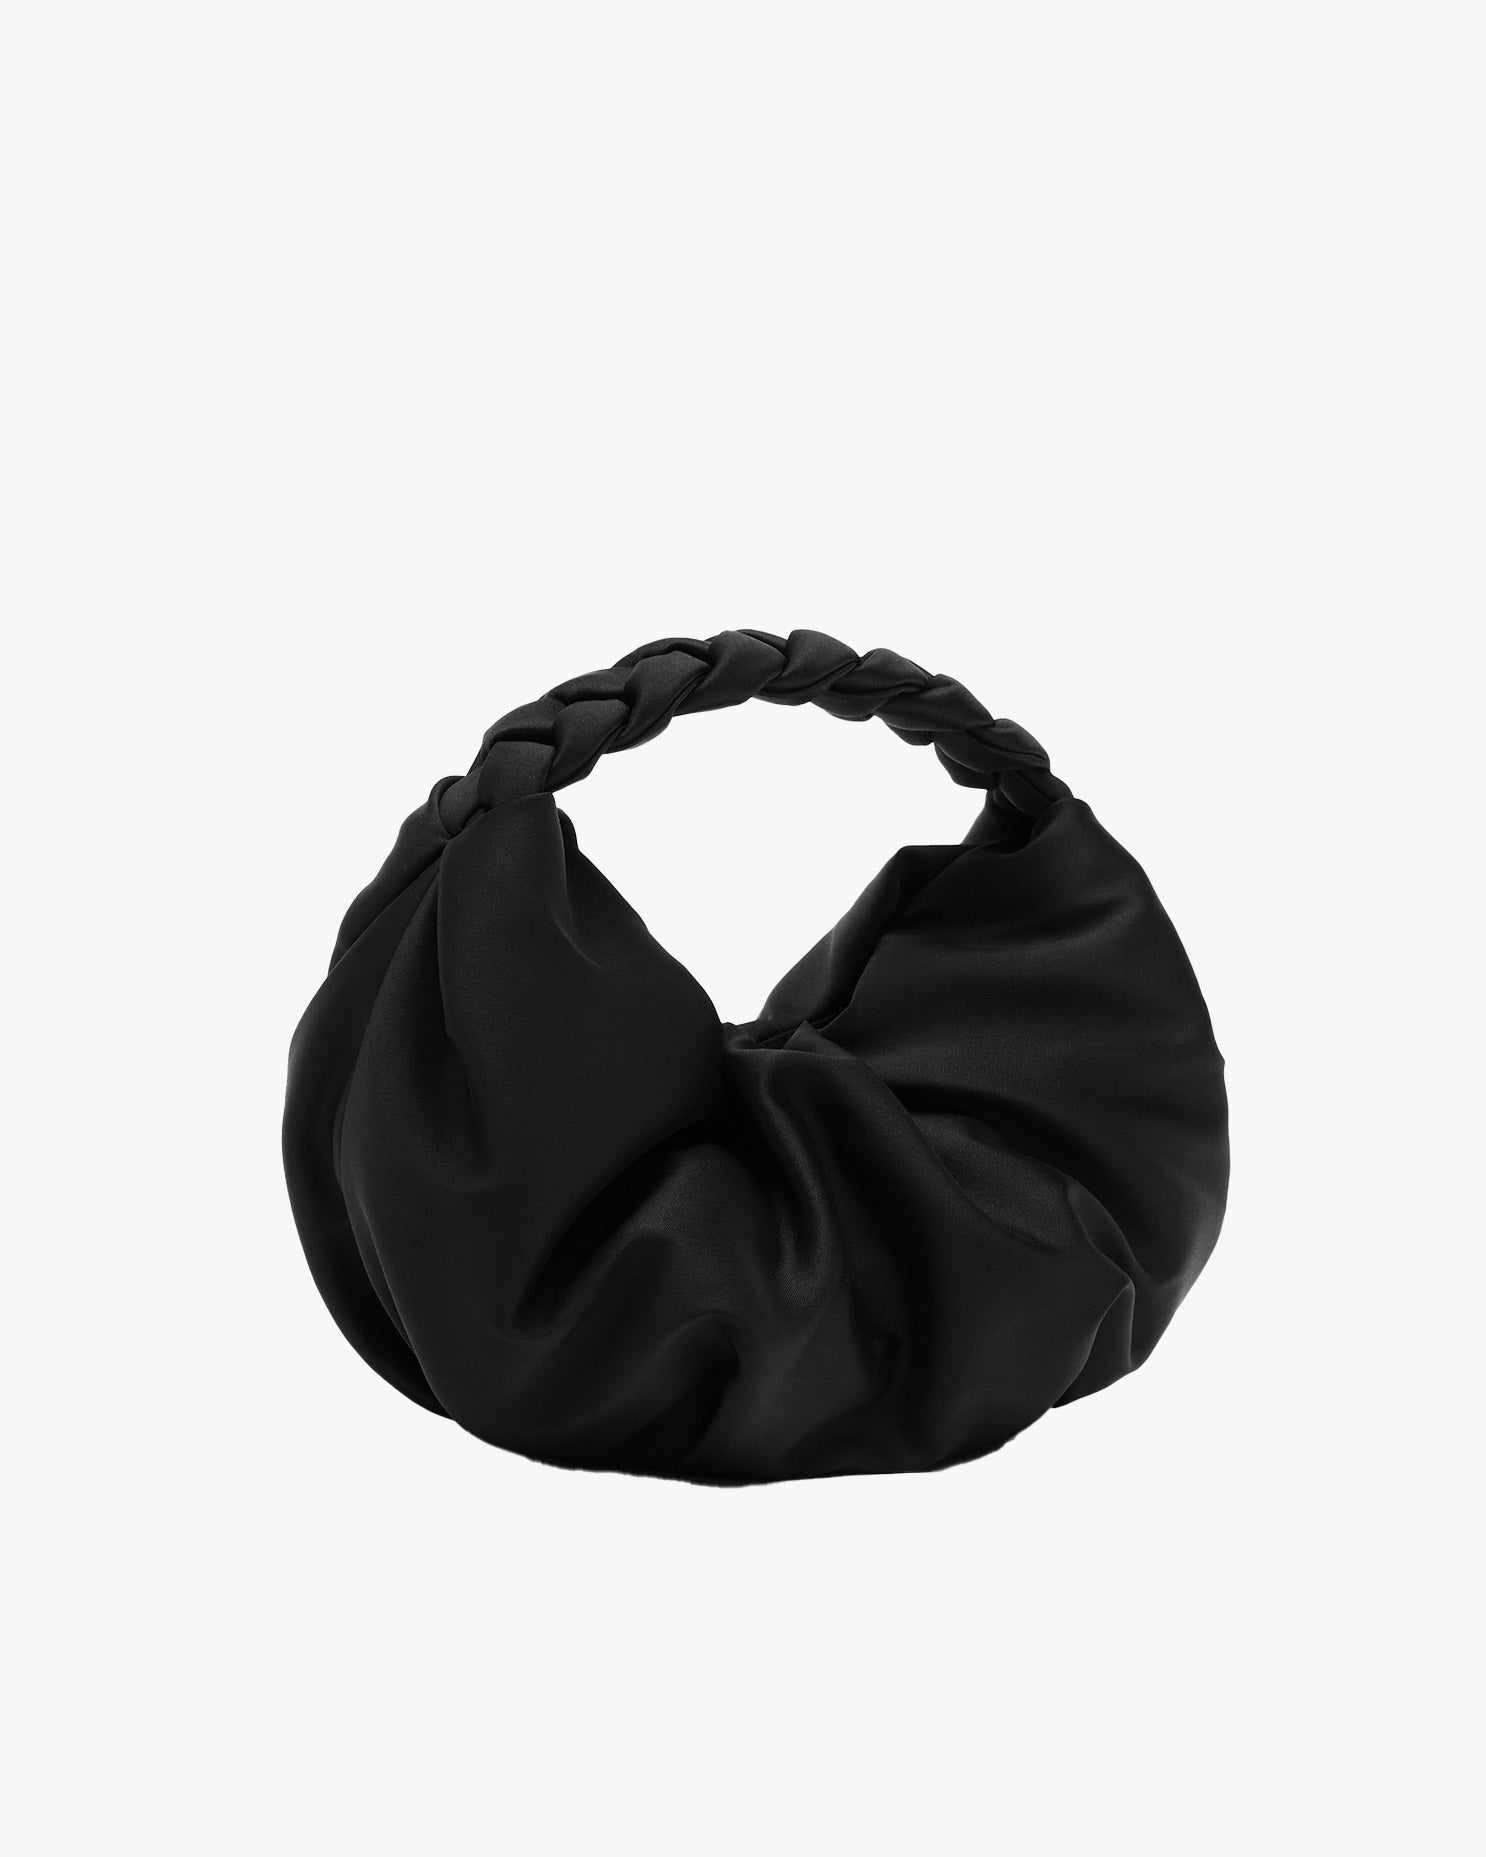 Erni Bag in Black